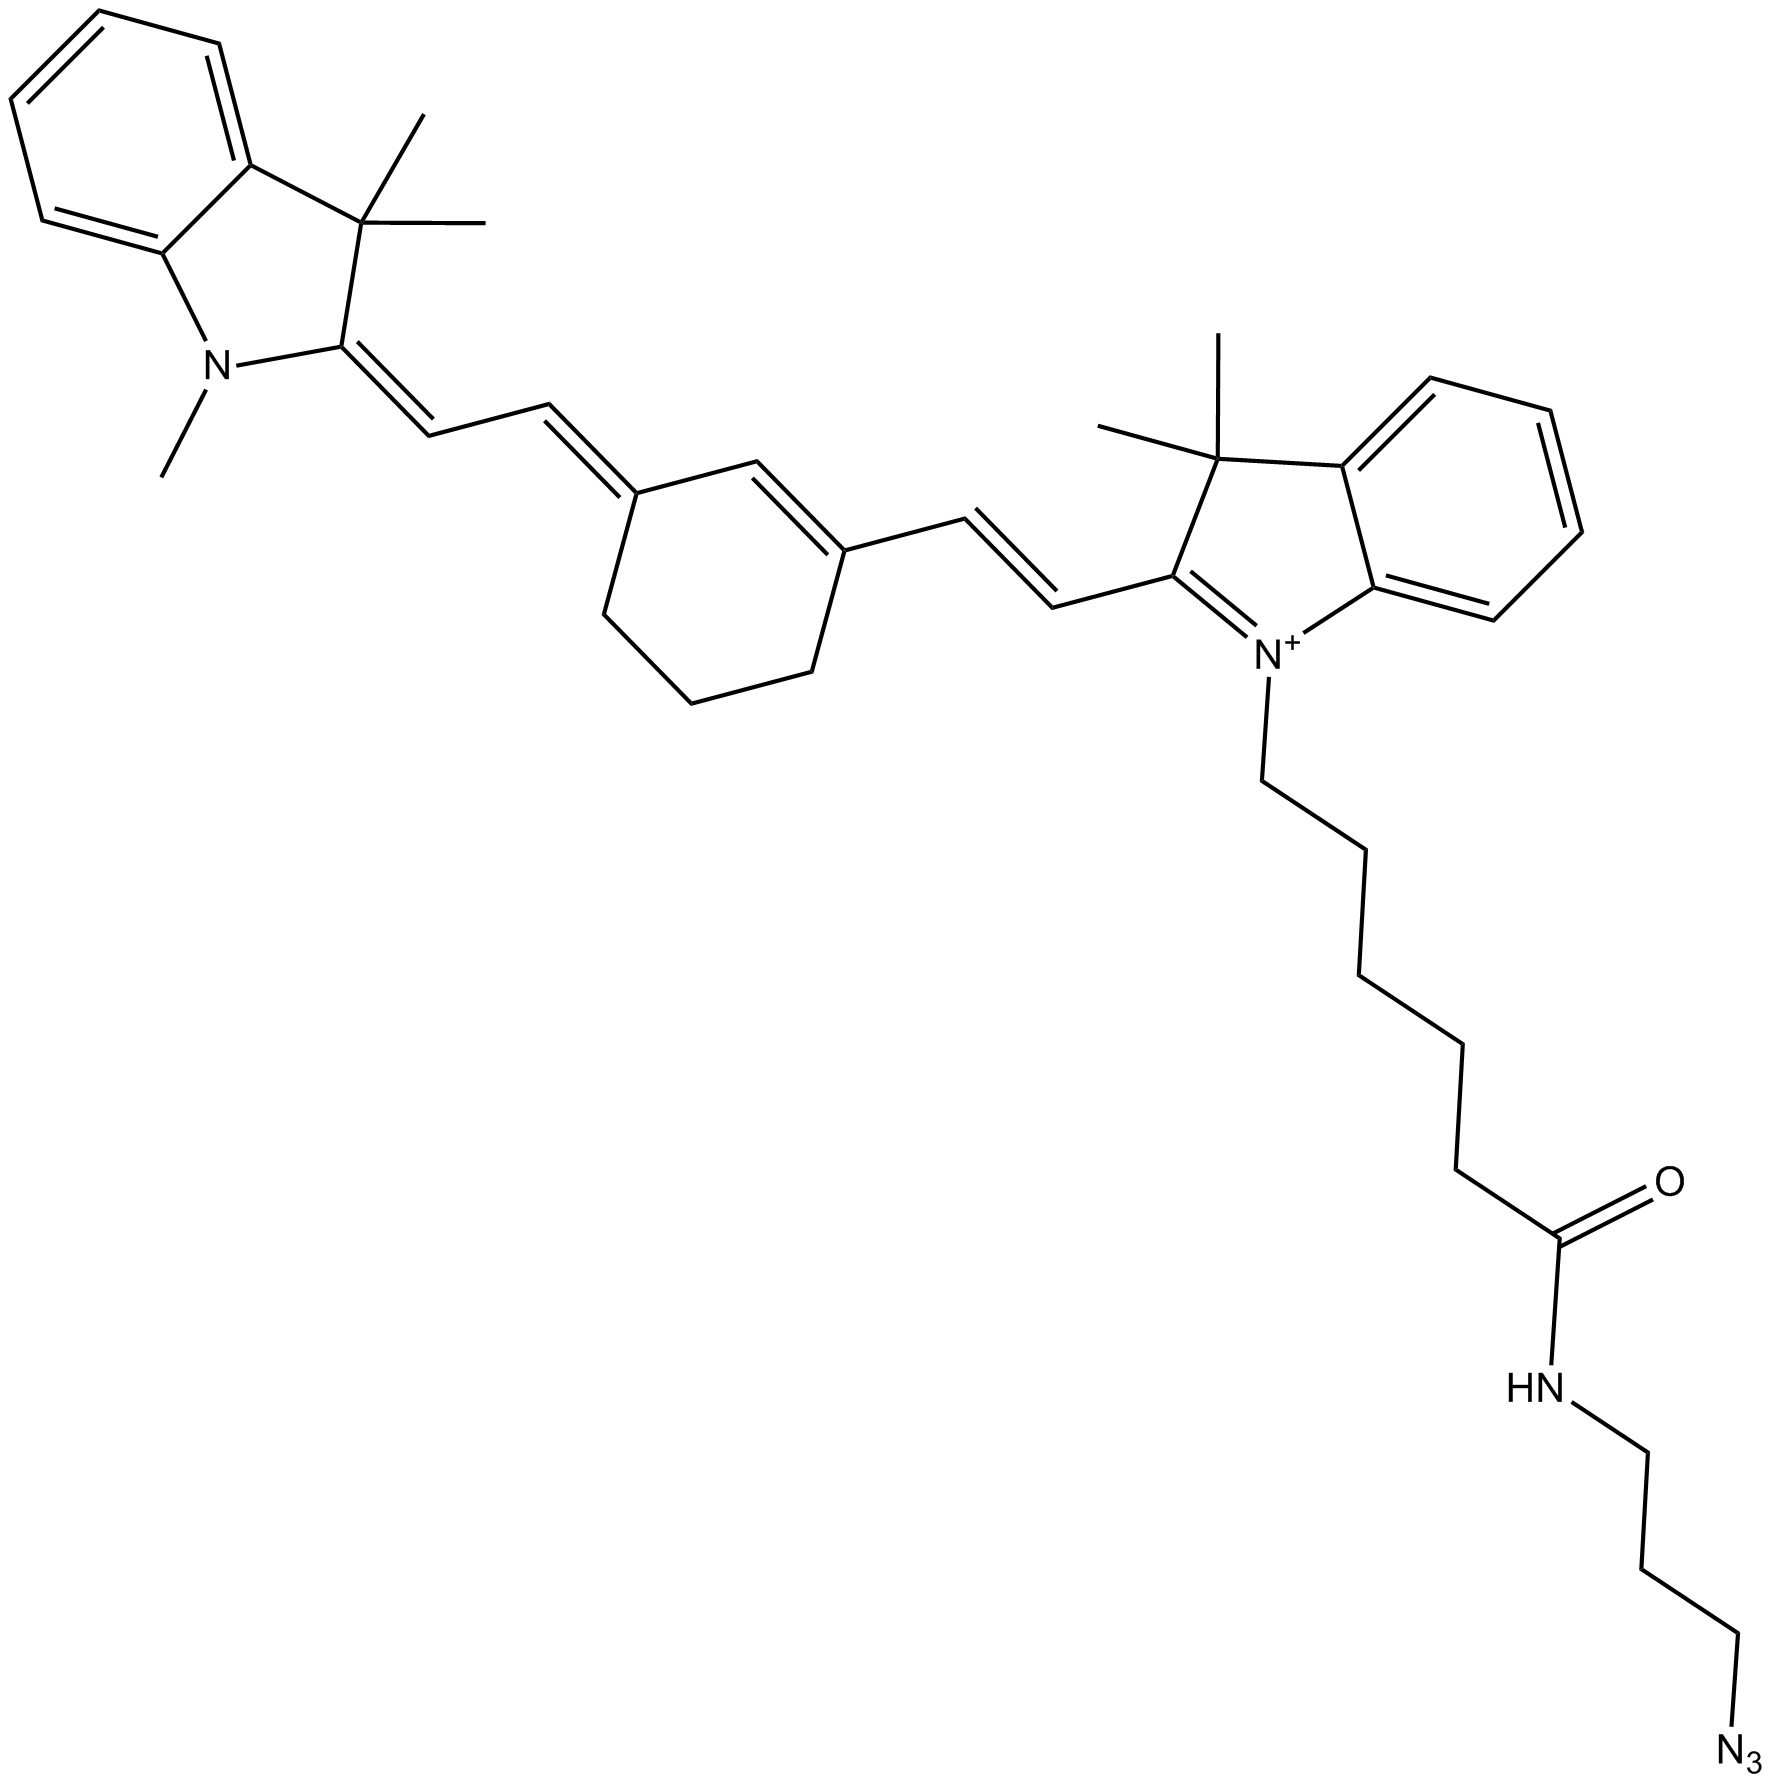 Cy7 azide (non-sulfonated)